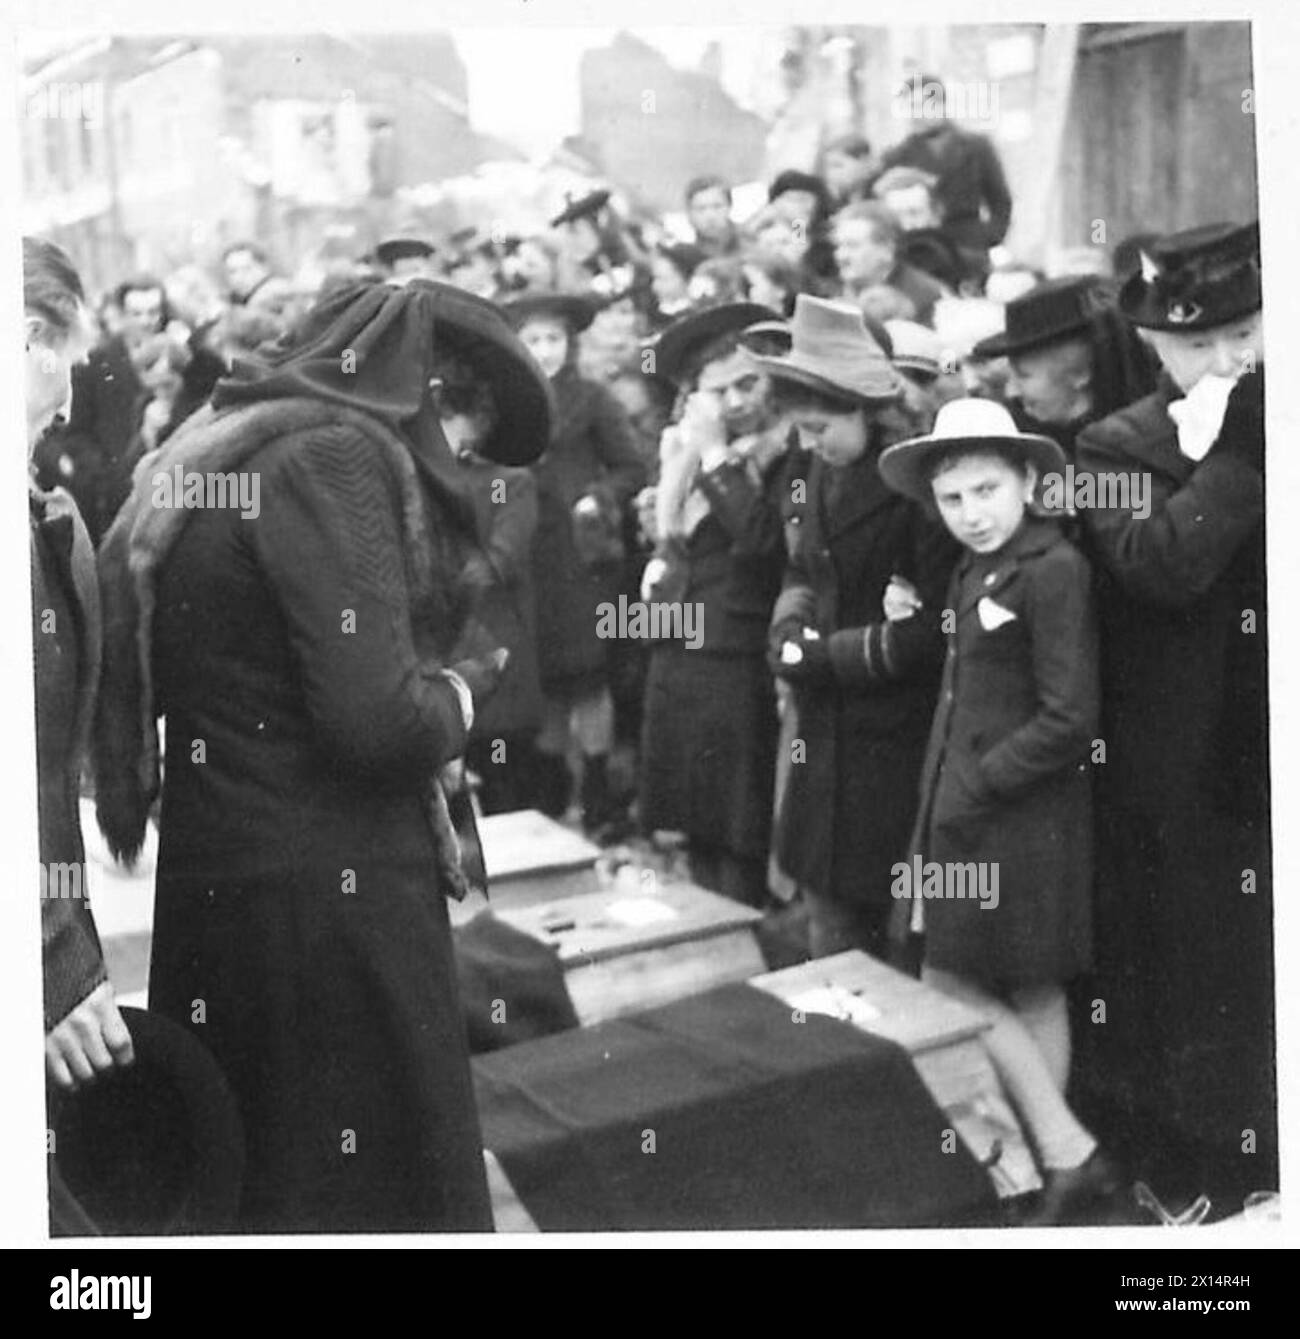 FUNERALE DELLE VITTIME della "BANDA" - le donne in lutto delle vittime, stanno pateticamente accanto alle bare dei loro cari, British Army, 21st Army Group Foto Stock